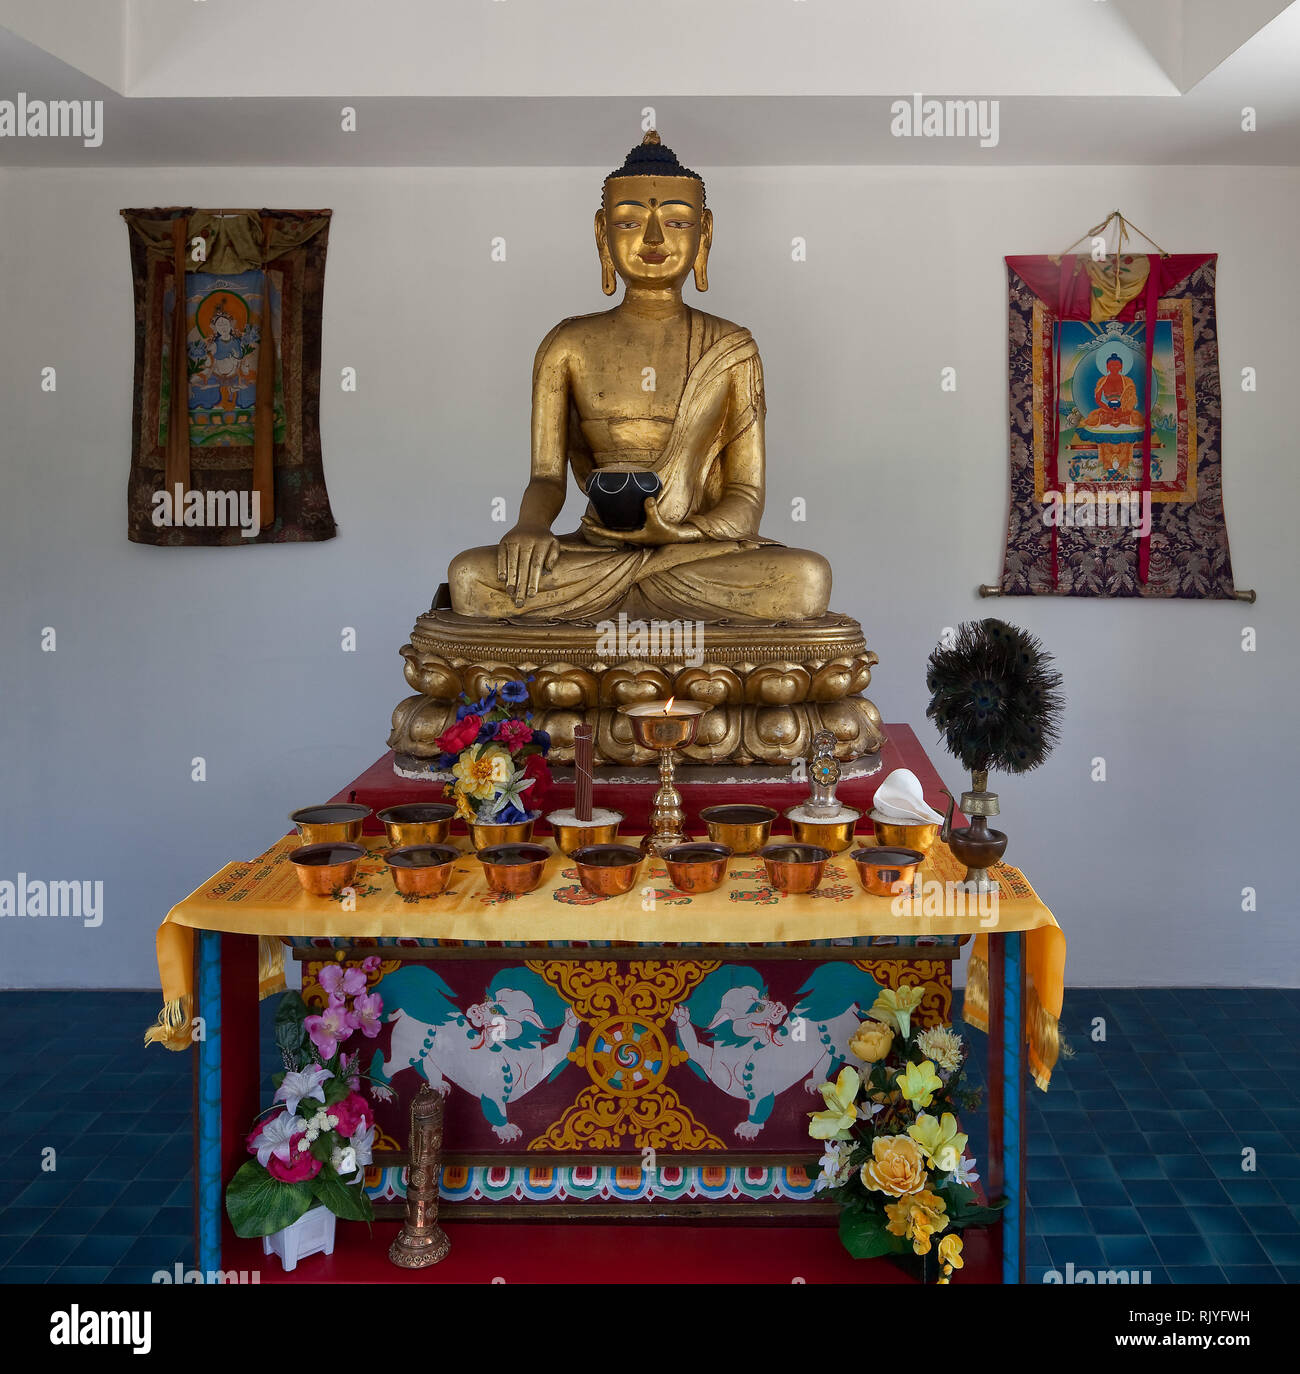 La Boulaye, TEMPEL DER 1000 Budas, gegründet 1987 von tibetischen Mönchen. Lamaistisches Zentrum verbunden mit einer Hochschule für Tibetologie, sit Foto de stock